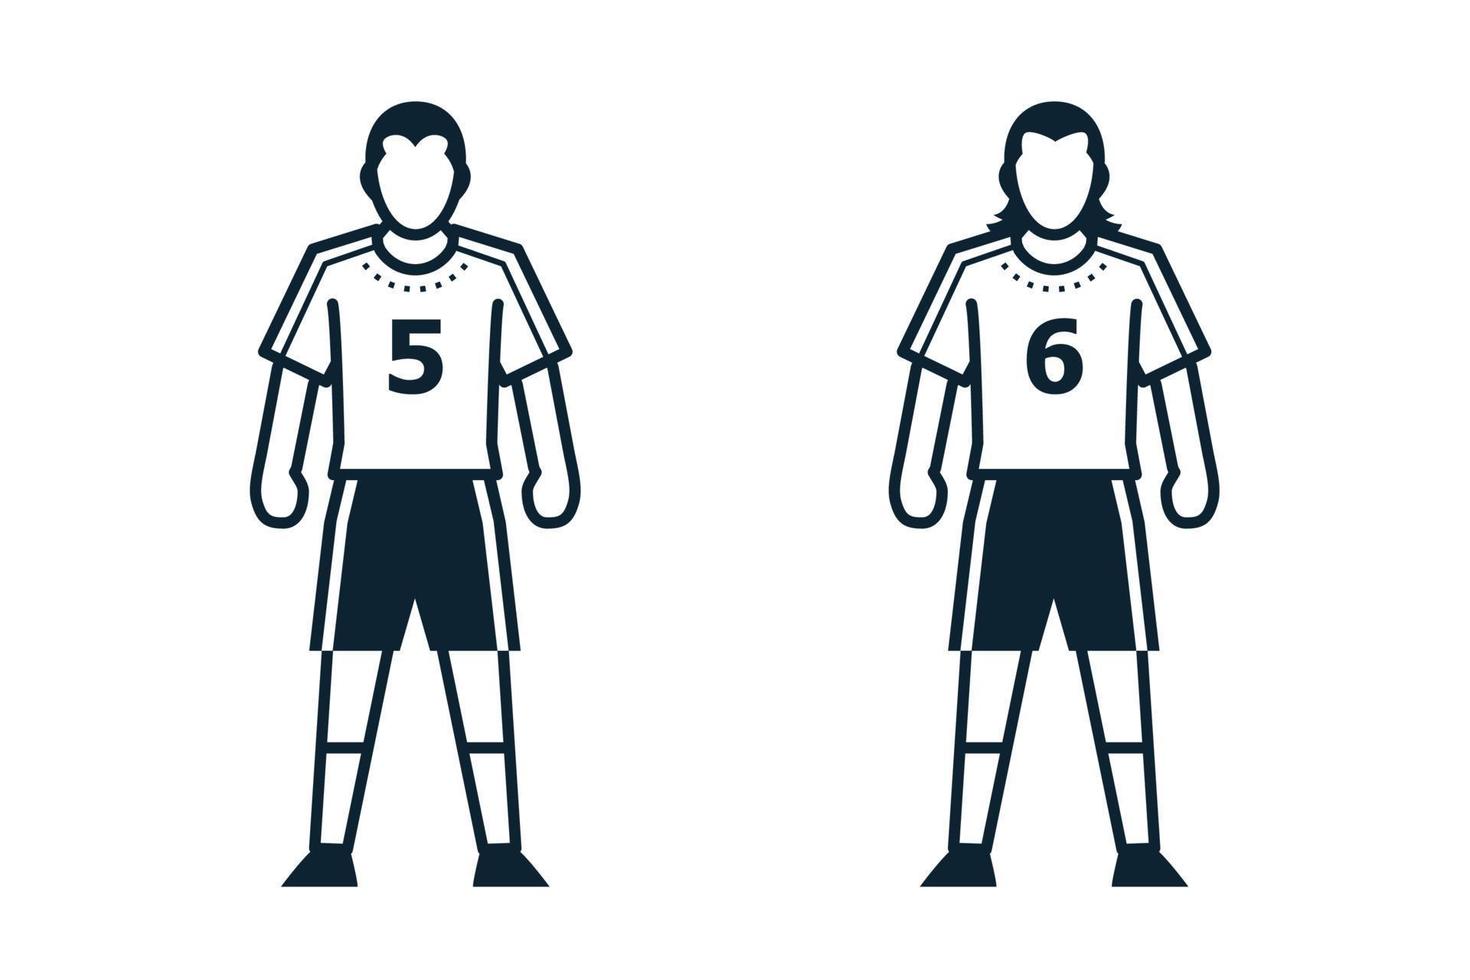 joueur de football, icônes de personnes et de vêtements avec fond blanc vecteur